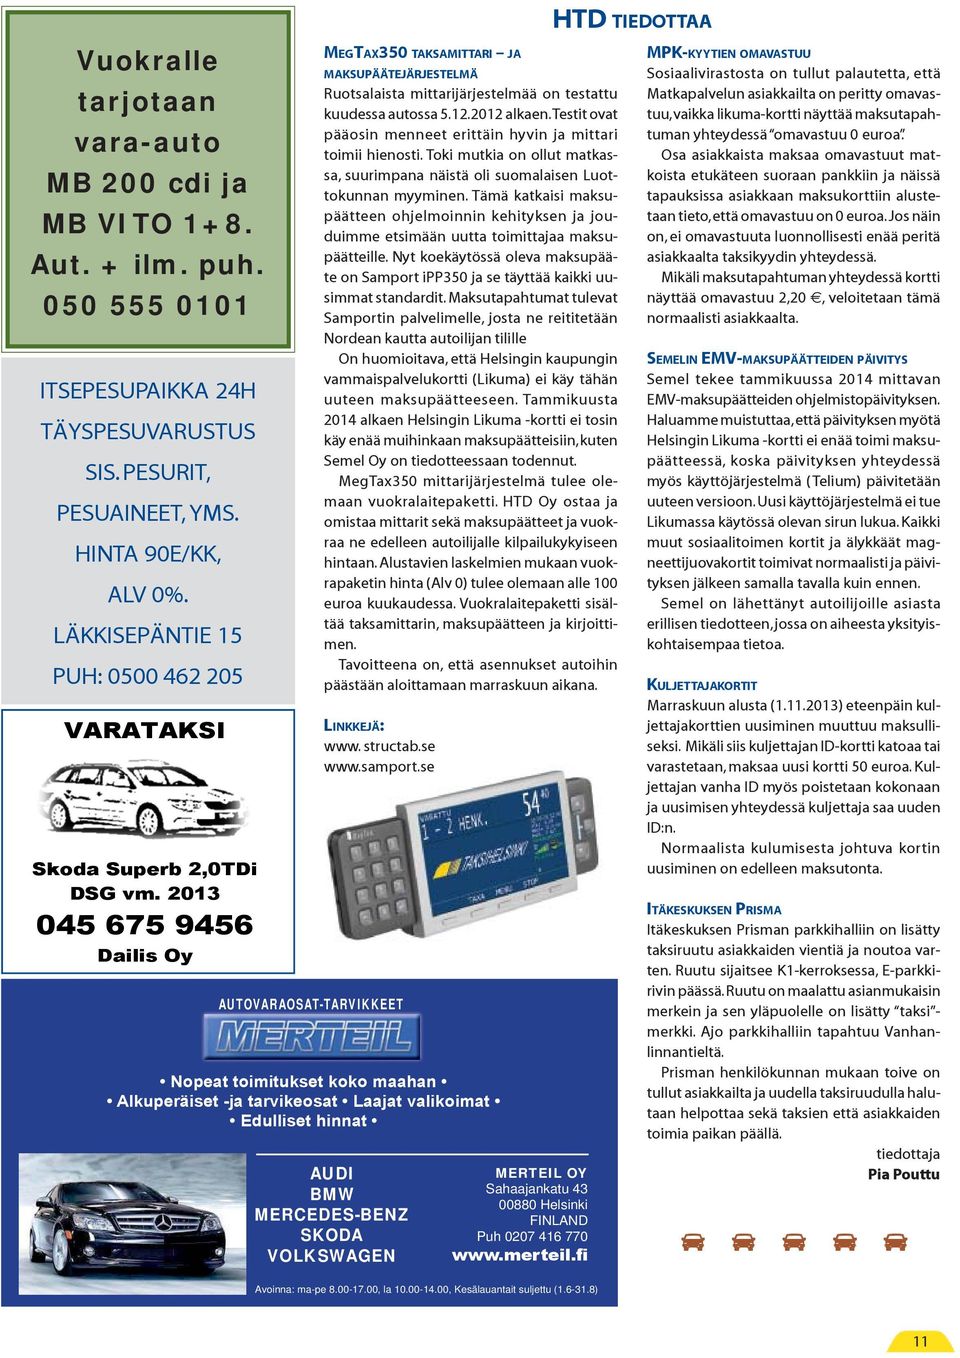 2013 045 675 9456 Dailis Oy MEGTAX350 TAKSAMITTARI JA MAKSUPÄÄTEJÄRJESTELMÄ Ruotsalaista mittarijärjestelmää on testattu kuudessa autossa 5.12.2012 alkaen.